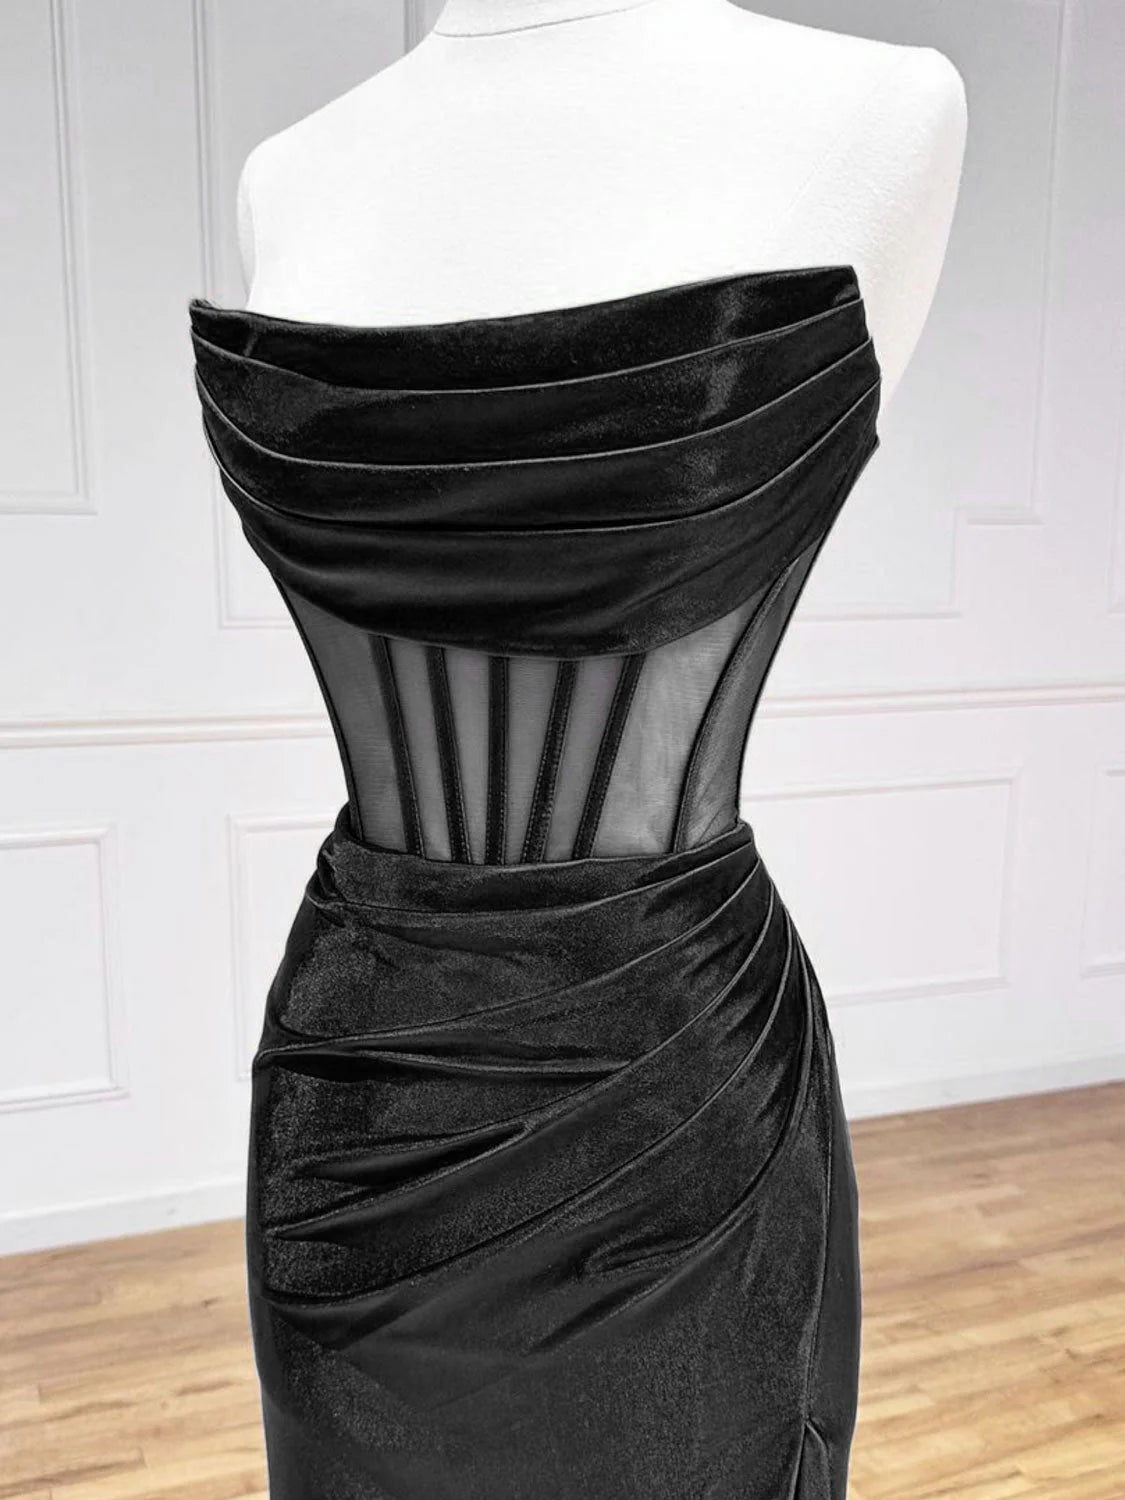 Simple Off the Shoulder Satin Black Long Prom Dress, Black Long Evening Dress nv1607